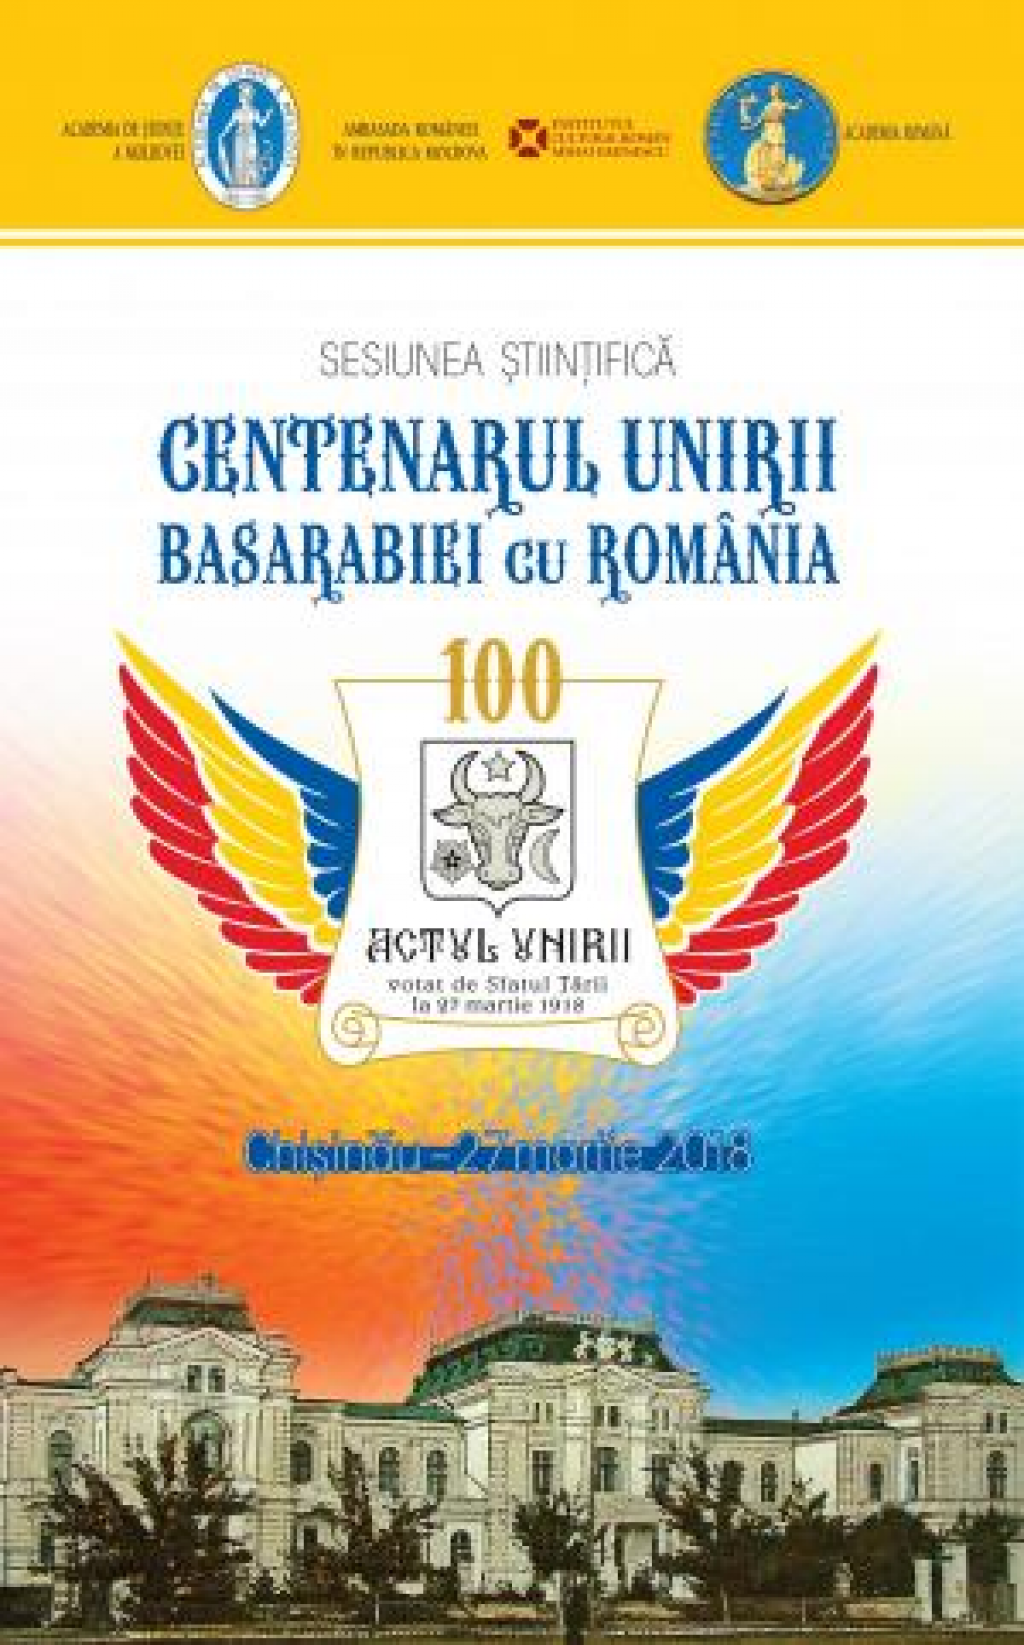 Sesiunea stiintifica Centenarul Unirii Basarabiei cu Romania si expozitia Centenarul Unirii Basarabiei cu tara